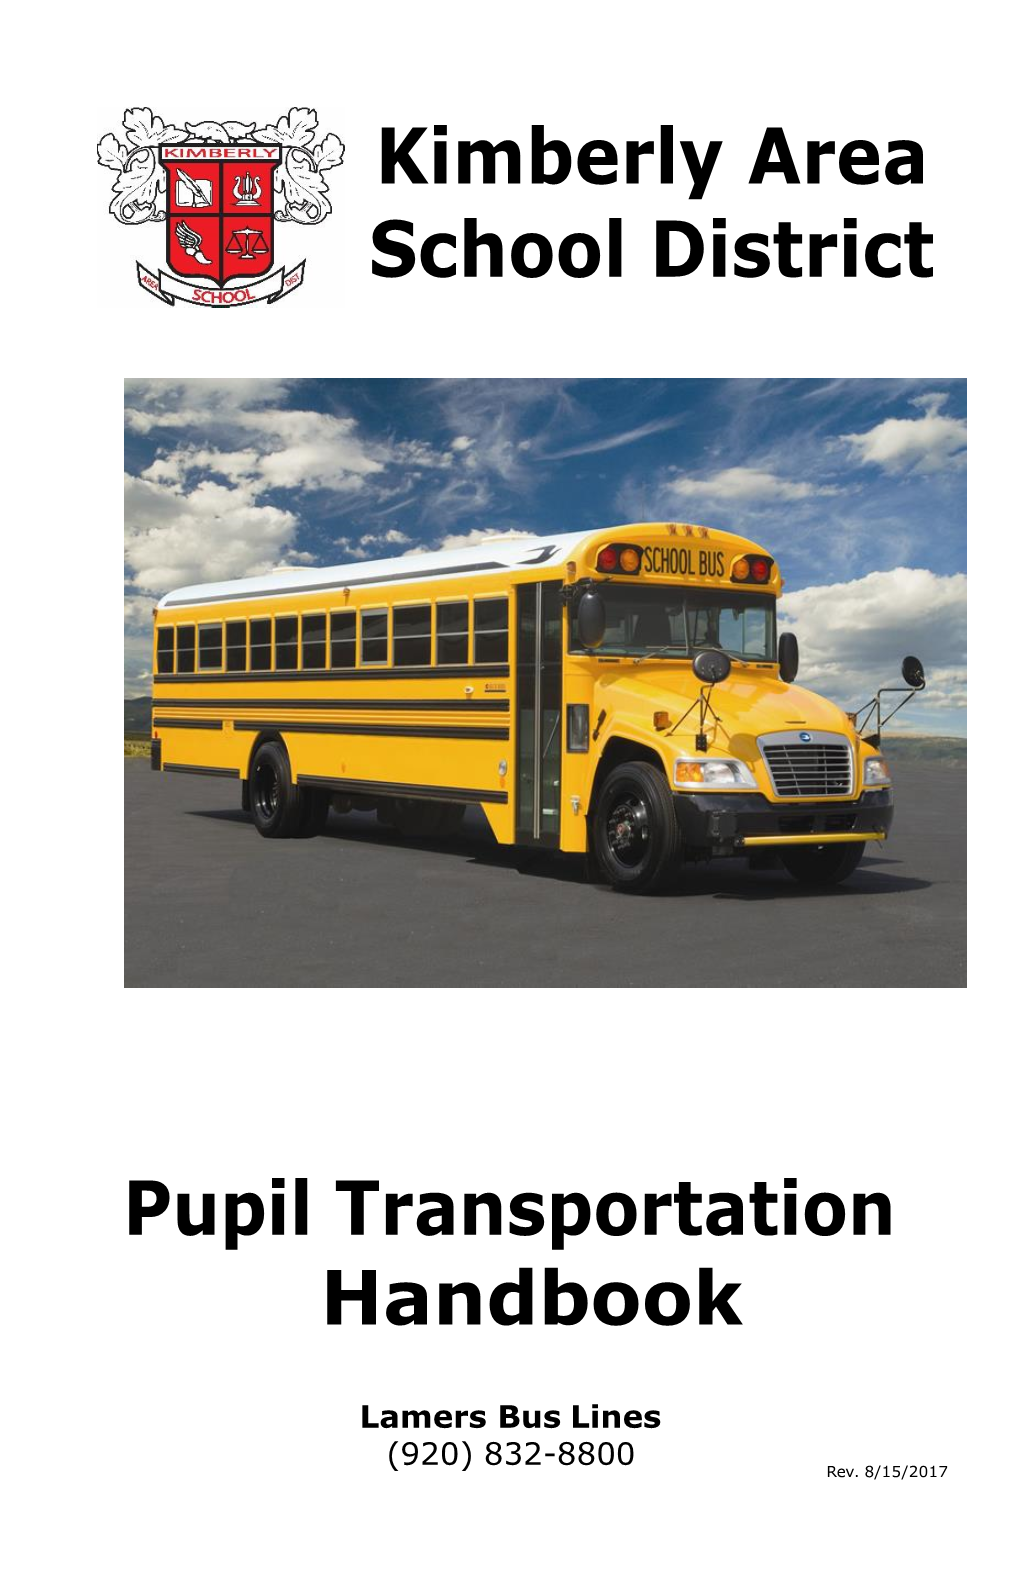 Pupil Transportation Handbook